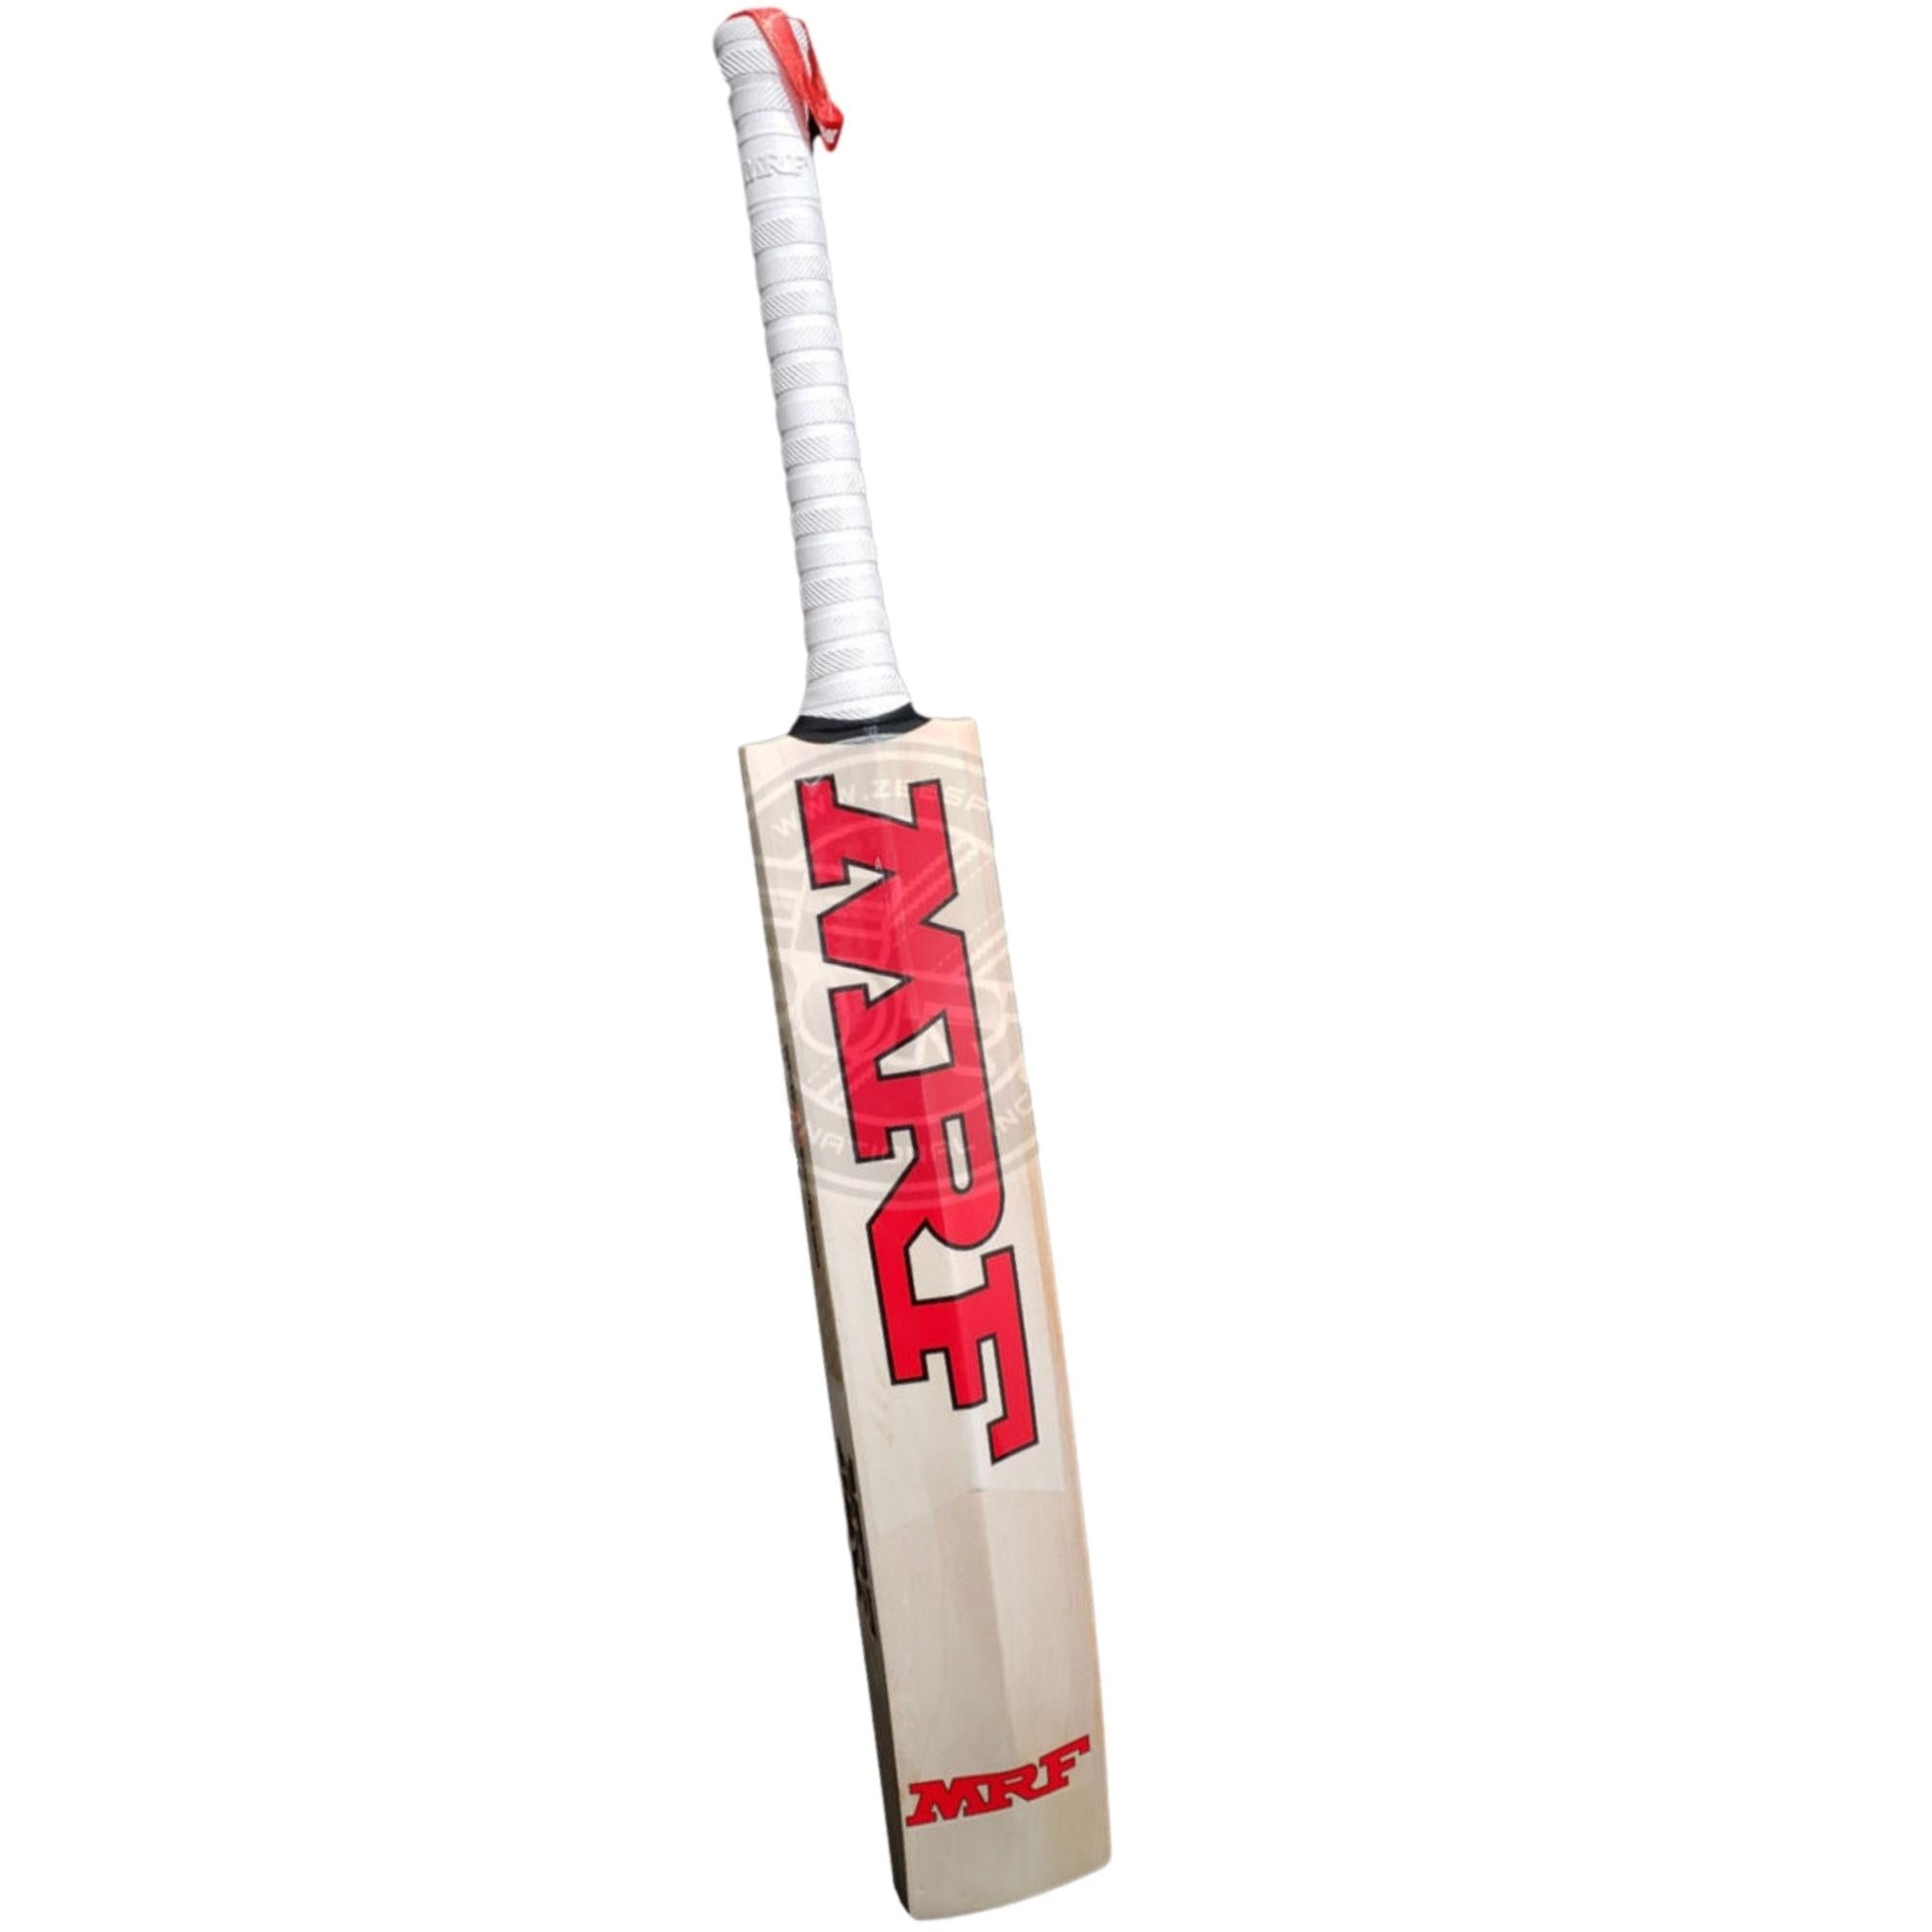 MRF Genuis 360 - AB de Villiers Player's Cricket Bat